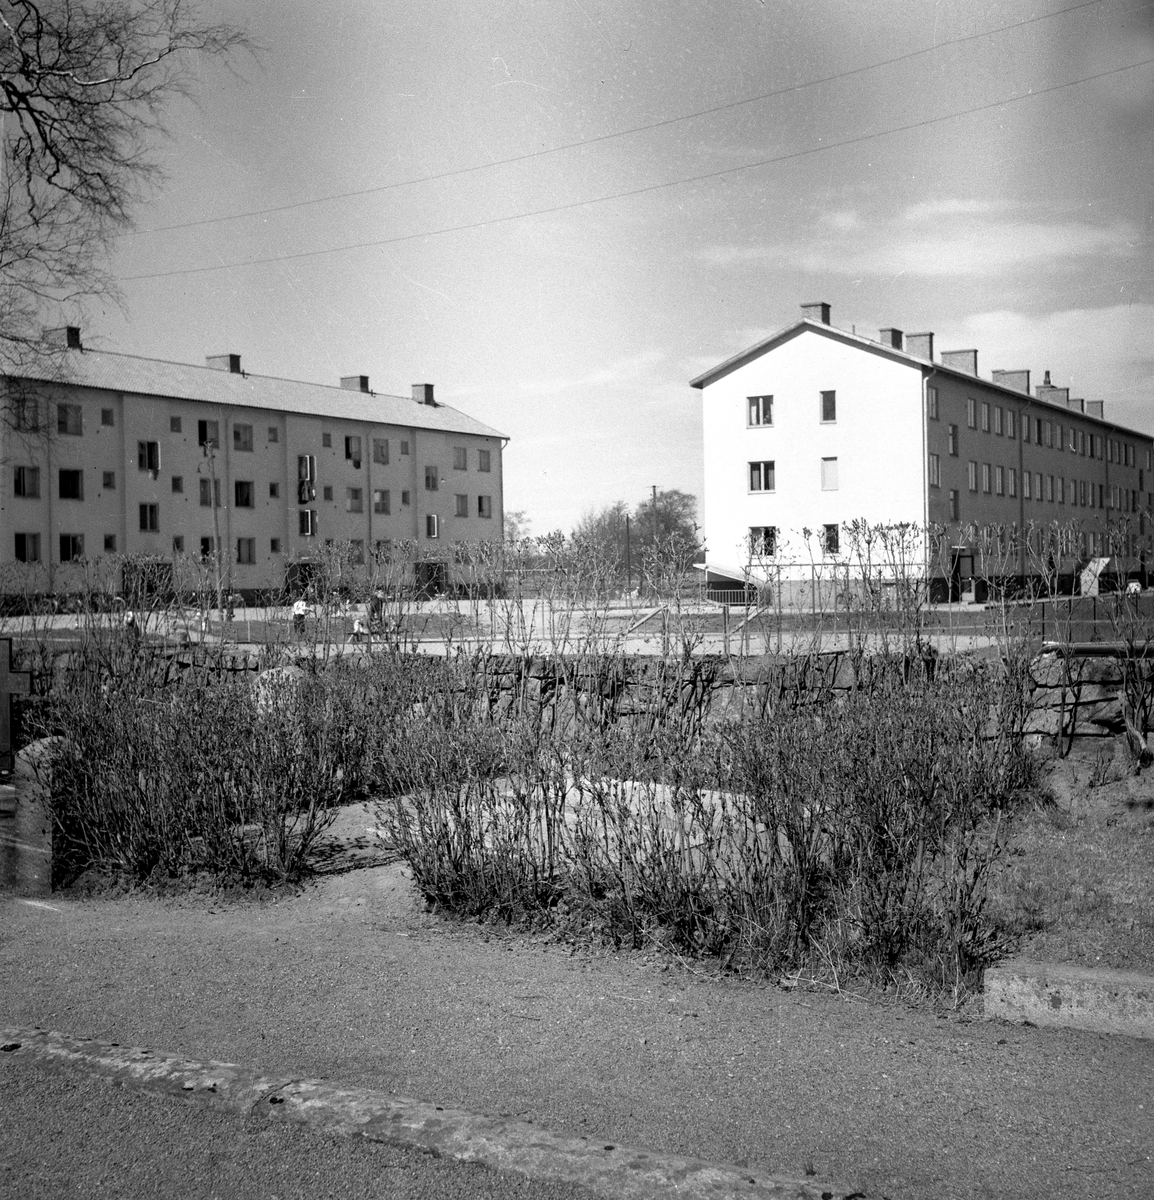 Fotografen står inne på gamla kyrkogården i riktning mot 2 nybyggda hyreshus på Malménsgatan.